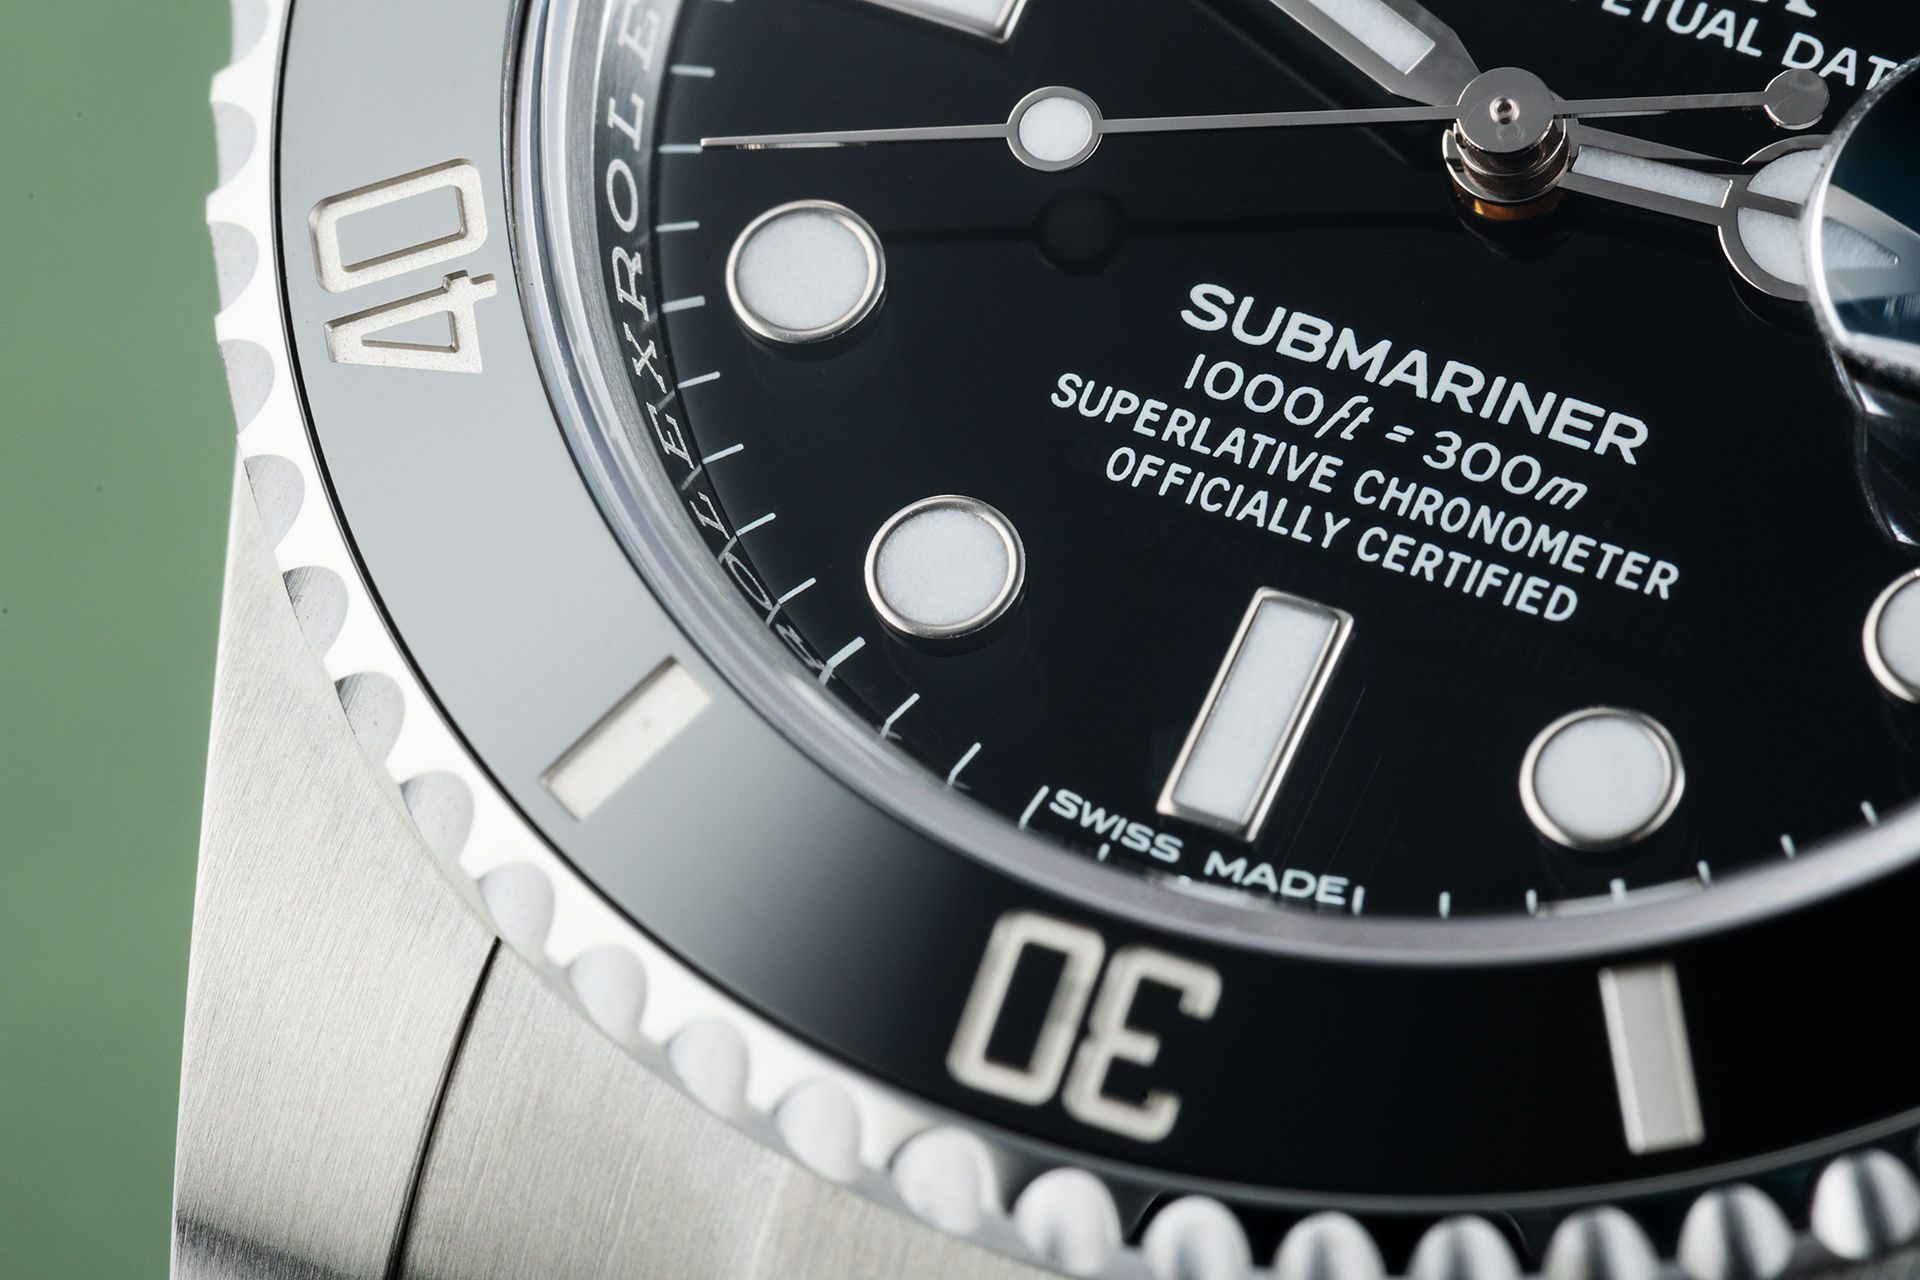 ref 116610LN | 5 Year Warranty  | Rolex Submariner Date